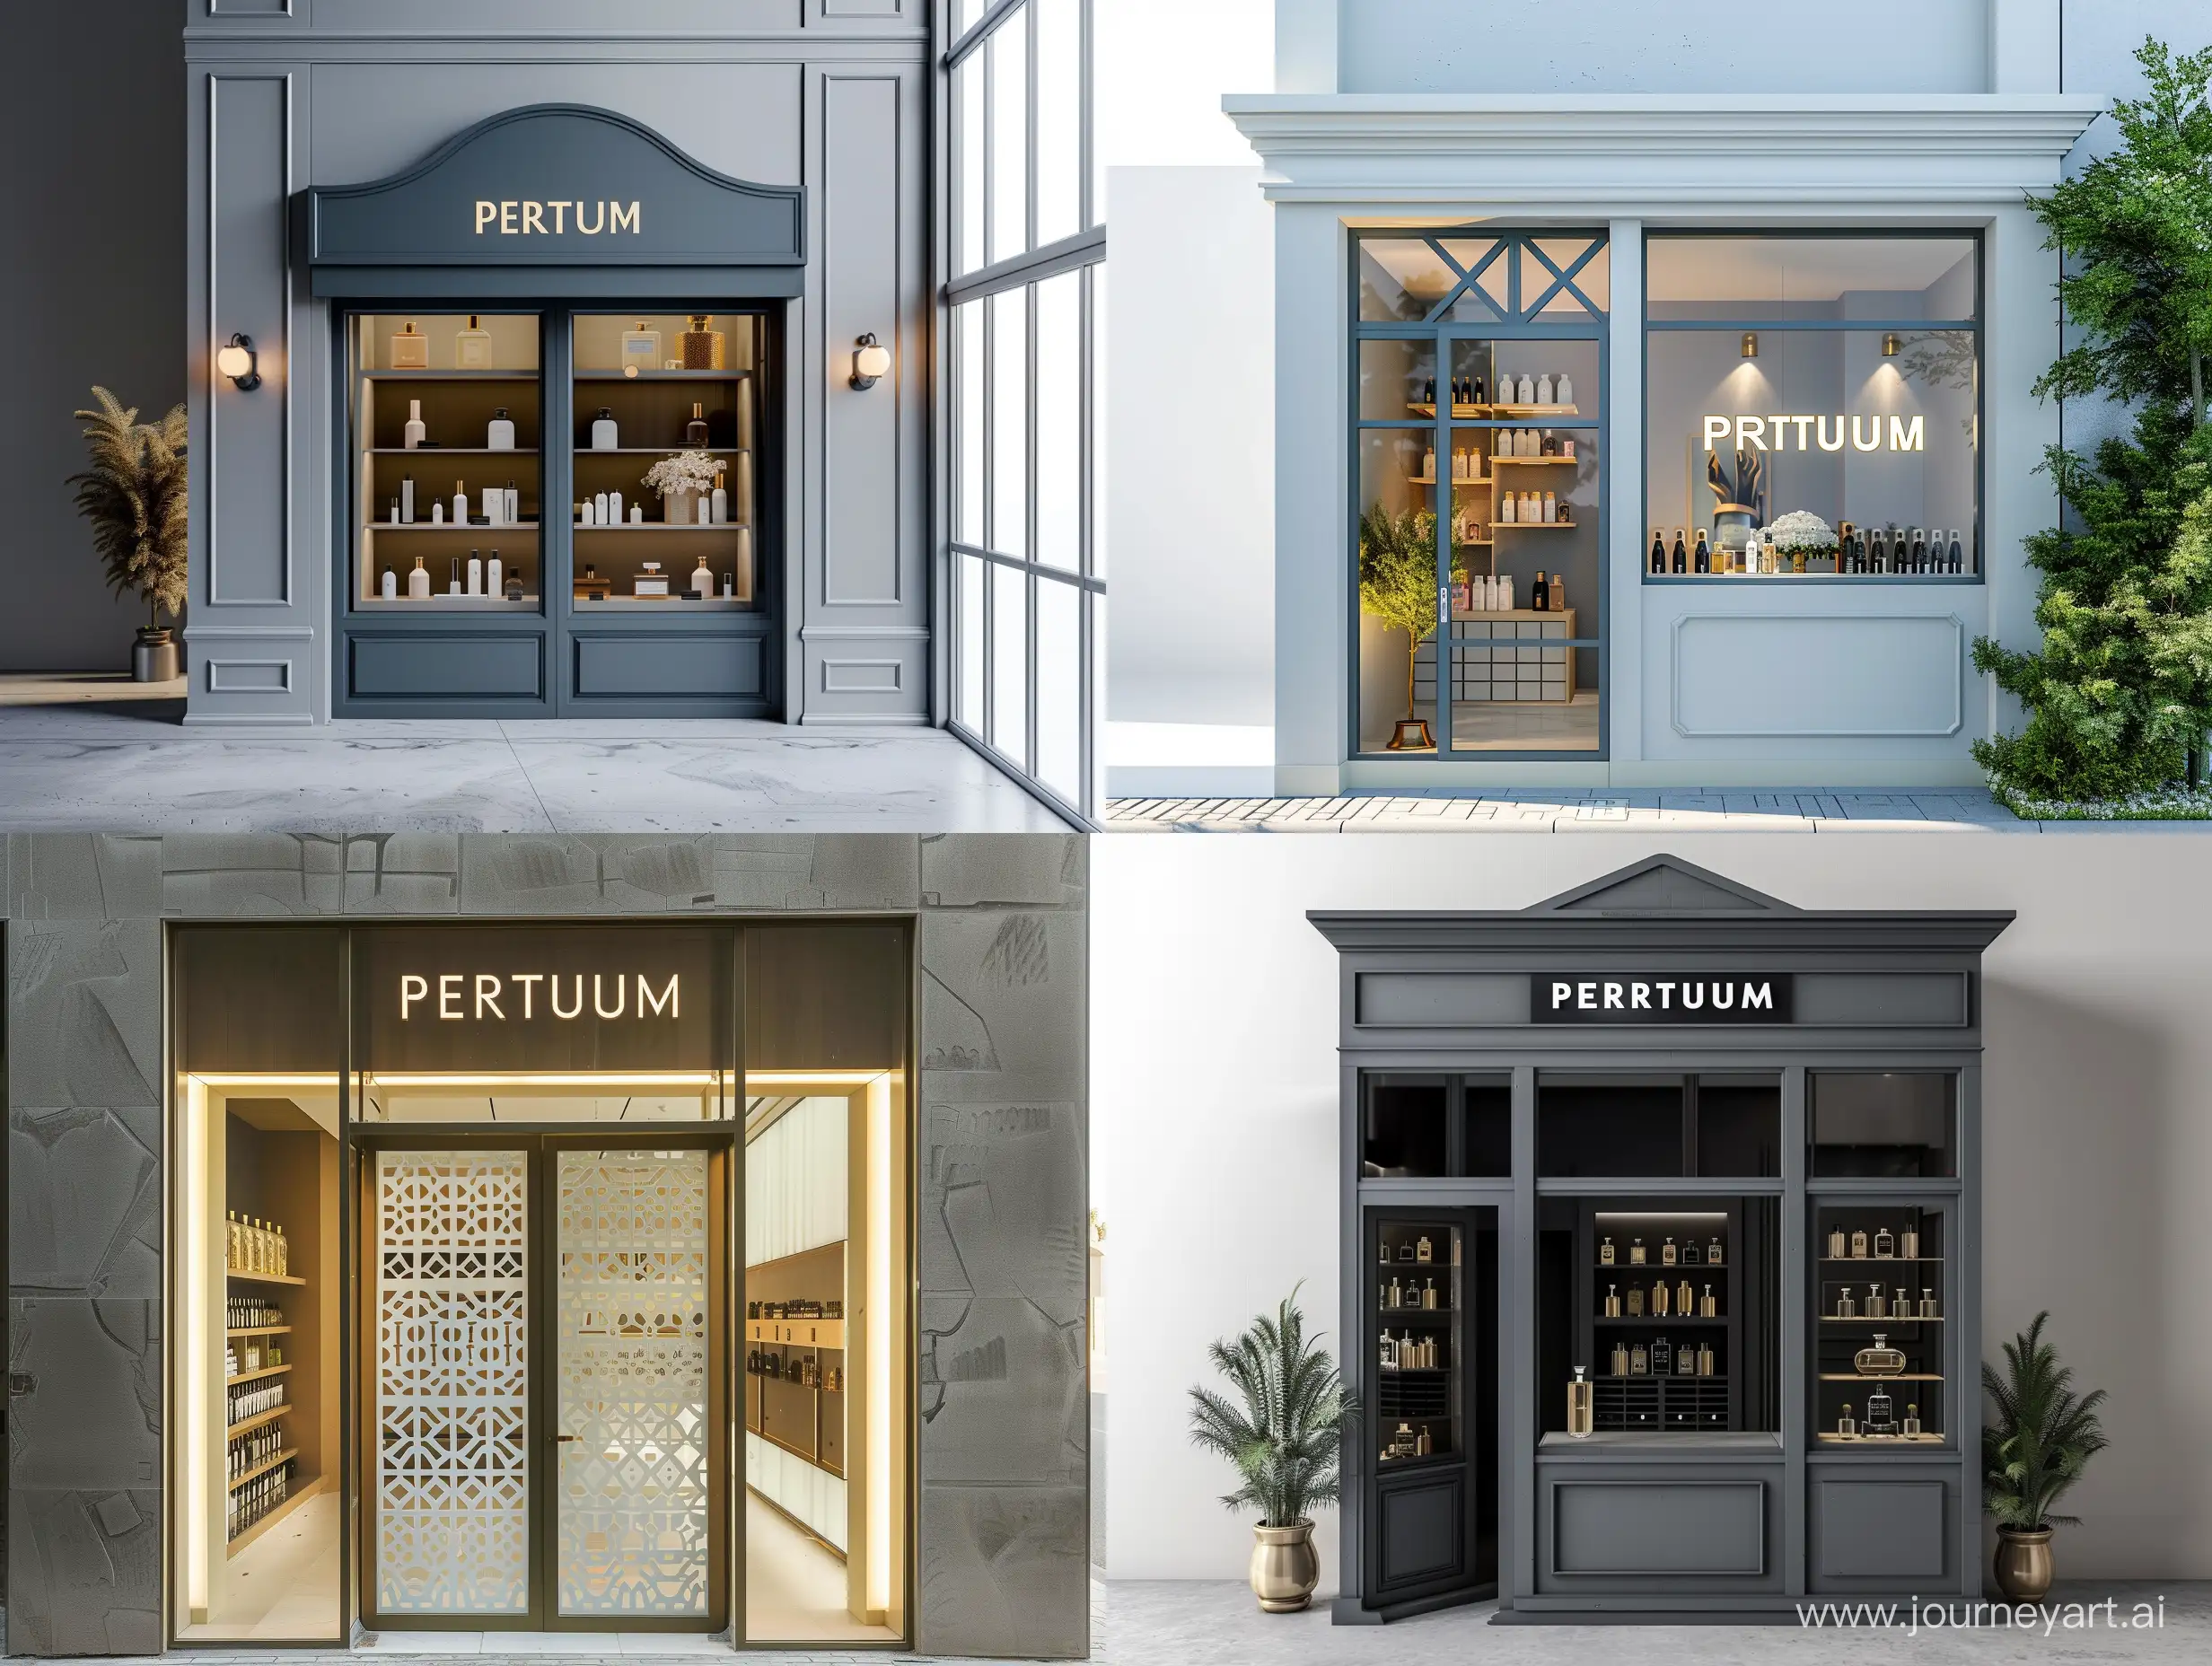 Luxury-Perfume-Shop-Facade-Elegant-Exterior-of-Perfum-Store